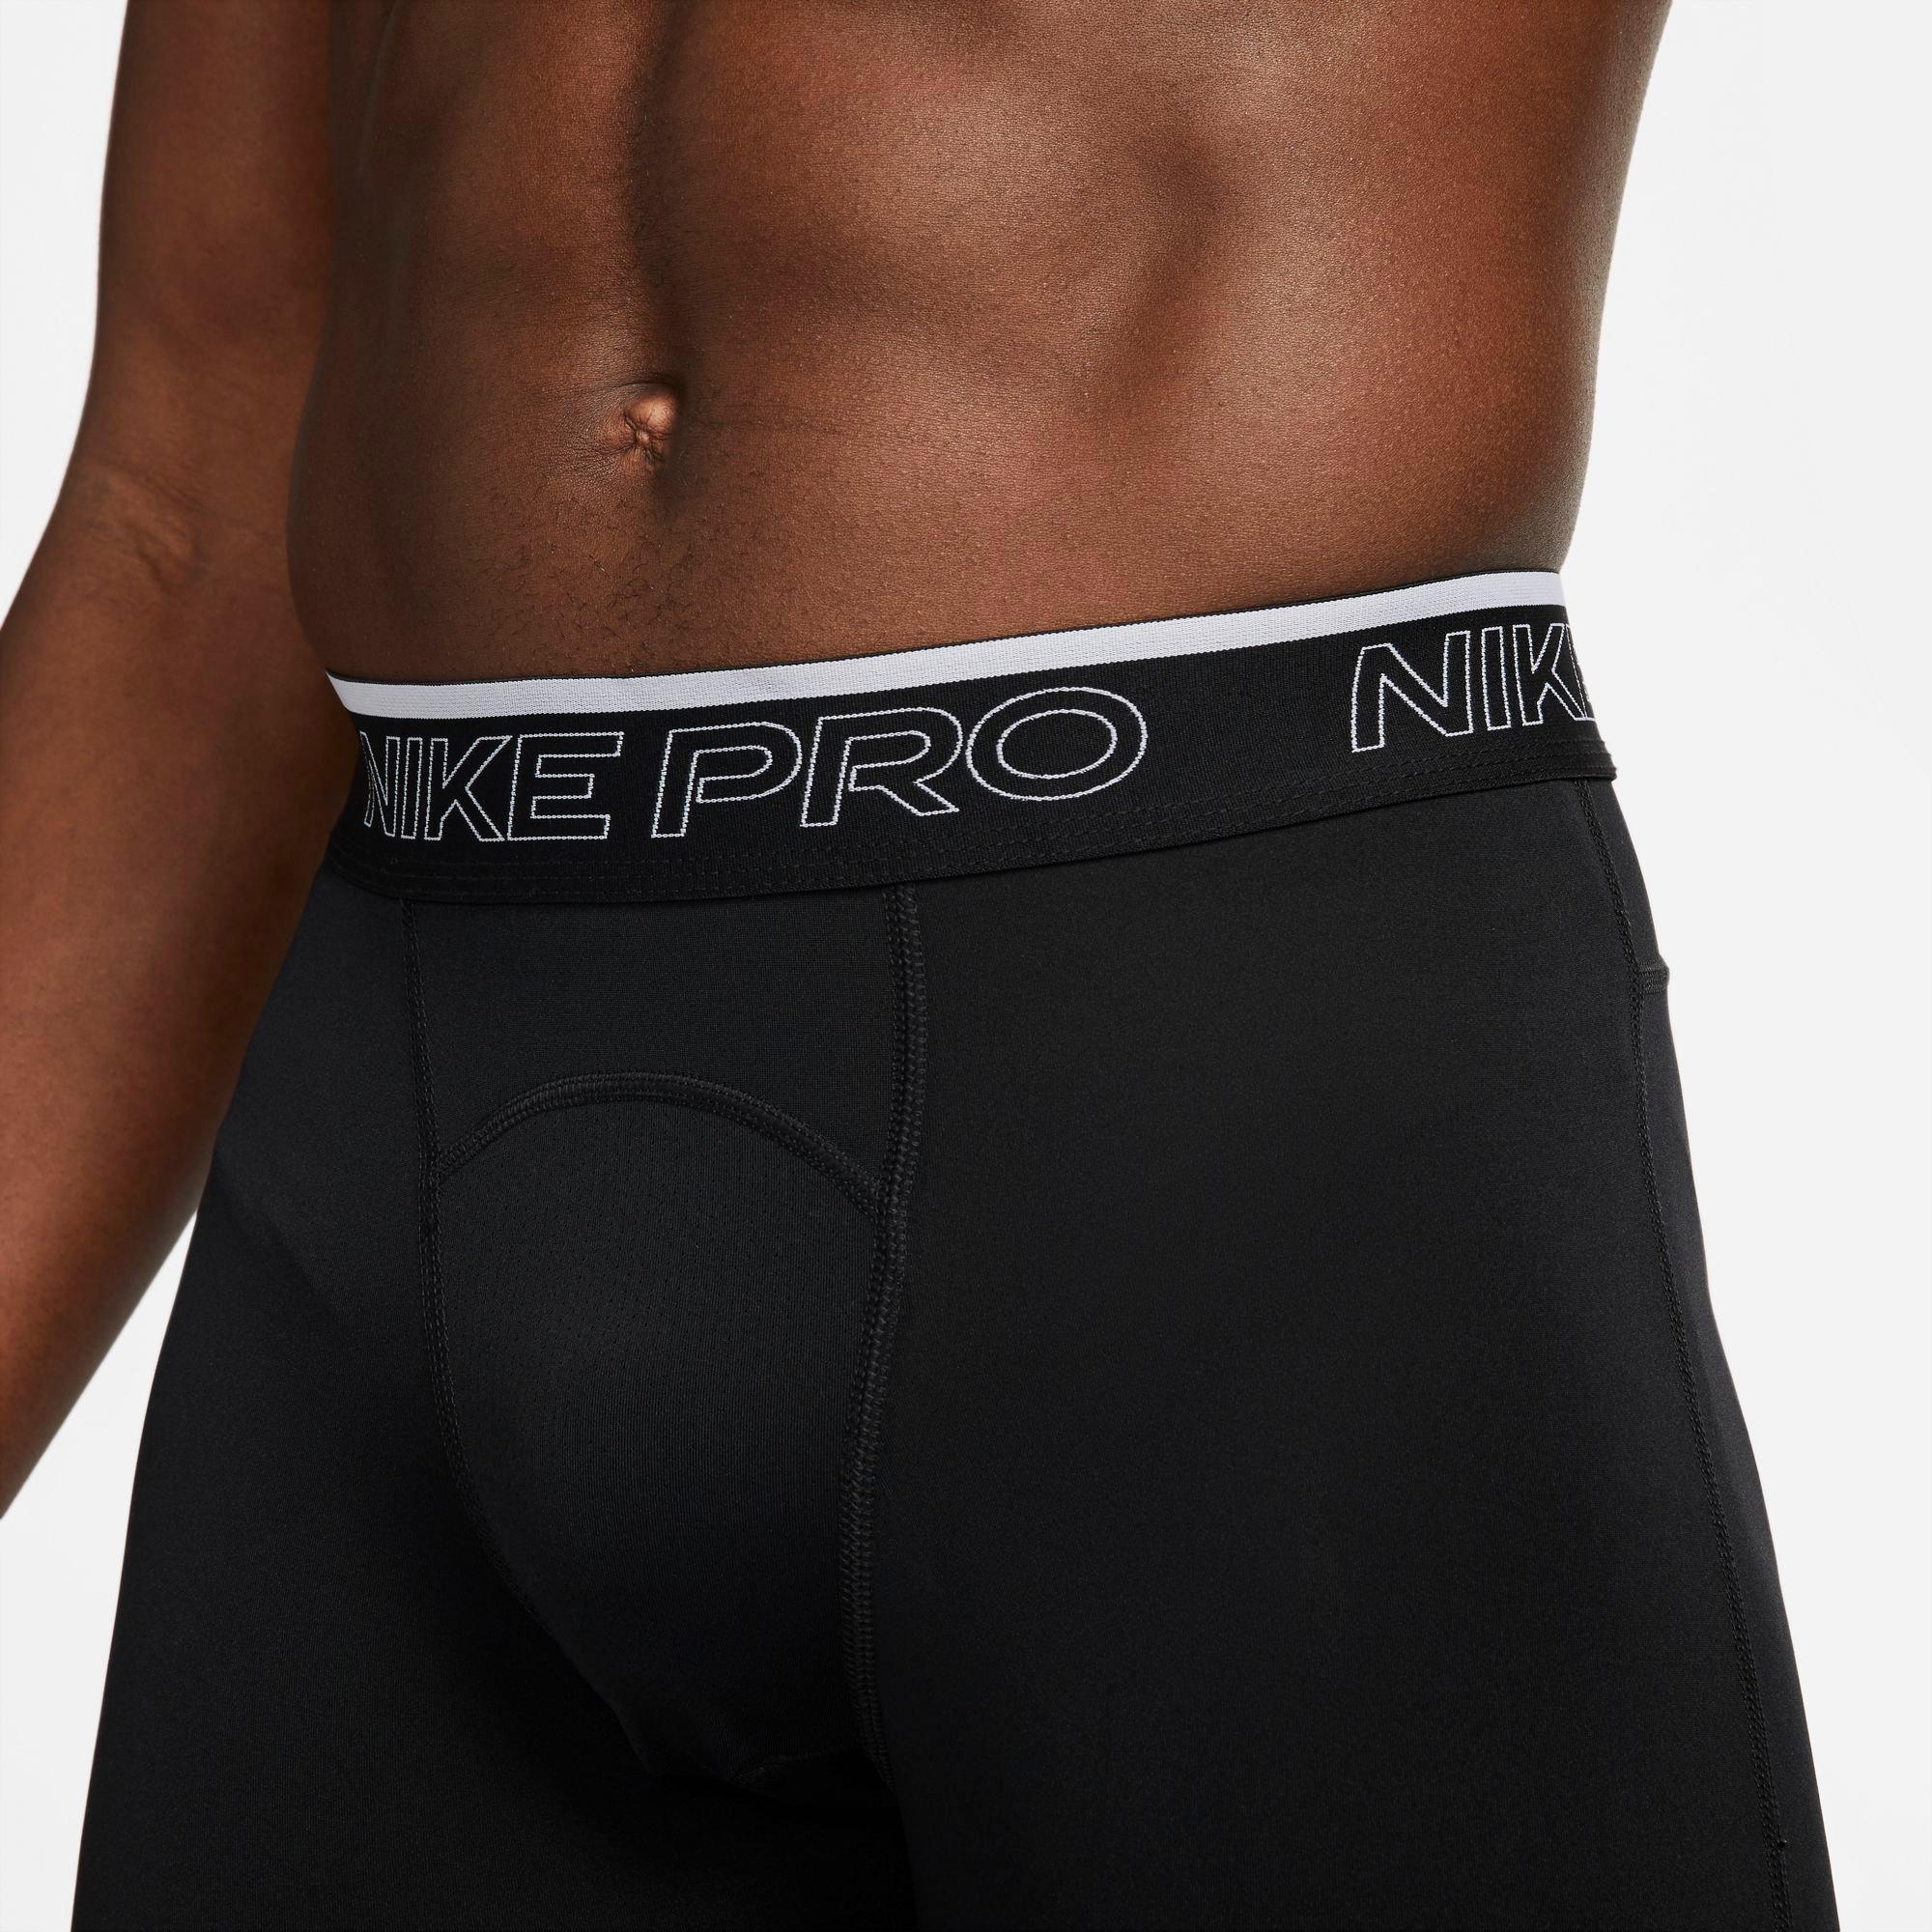 Shorts, Underwear Nike Pro, Dri-Fit, BLACK, Mens Size 2XL 